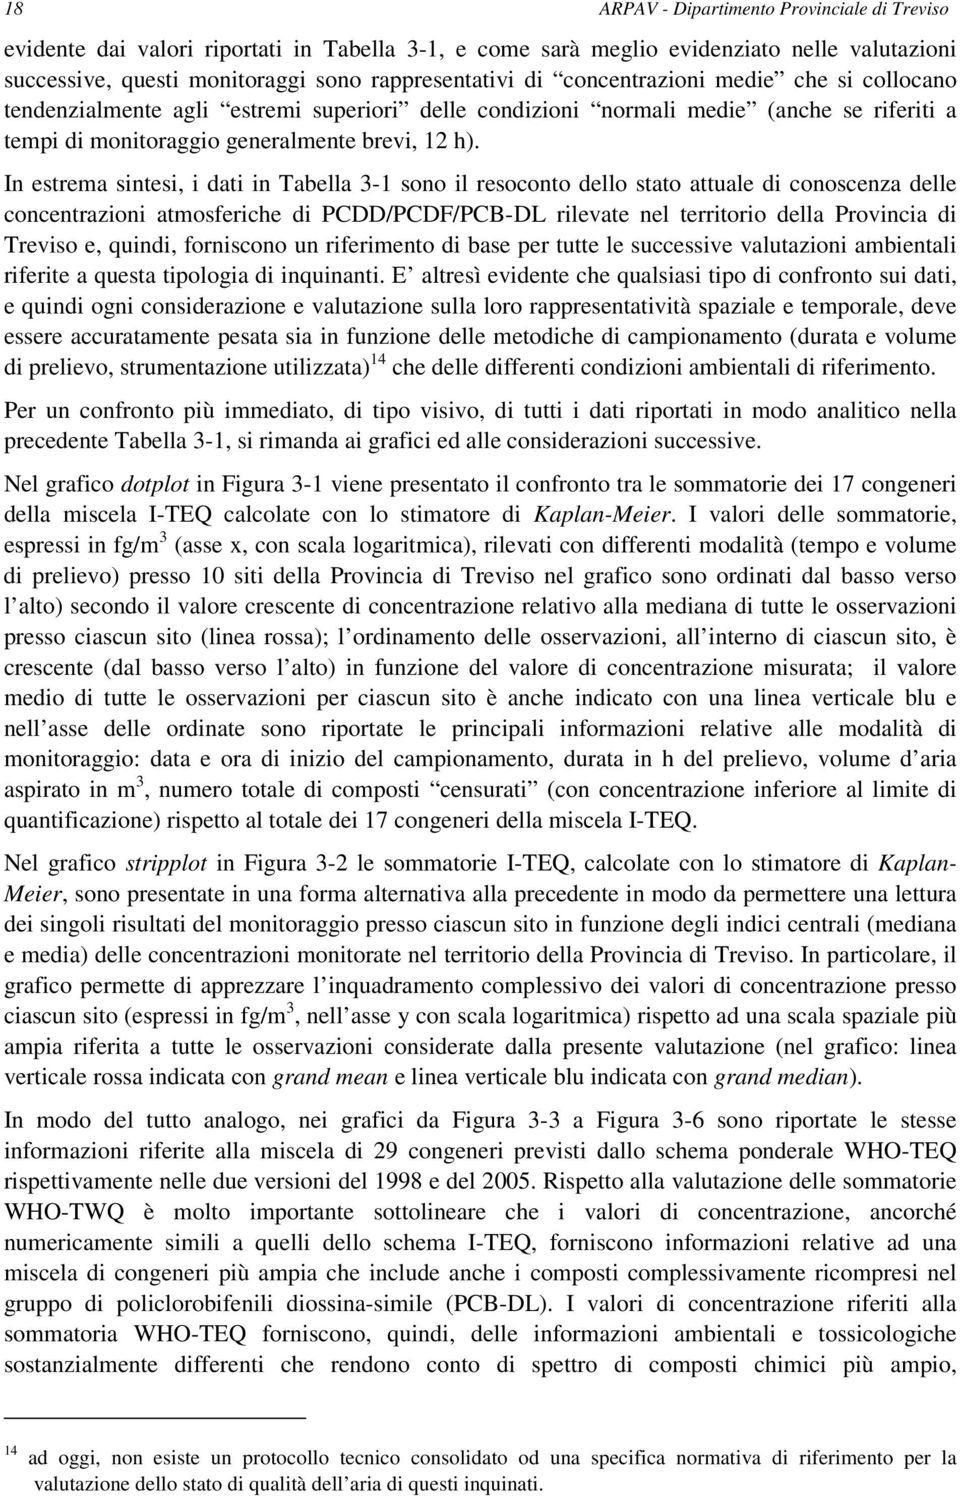 In estrema sintesi, i dati in Tabella 3-1 sono il resoconto dello stato attuale di conoscenza delle concentrazioni atmosferiche di PCDD/PCDF/PCB-DL rilevate nel territorio della Provincia di Treviso